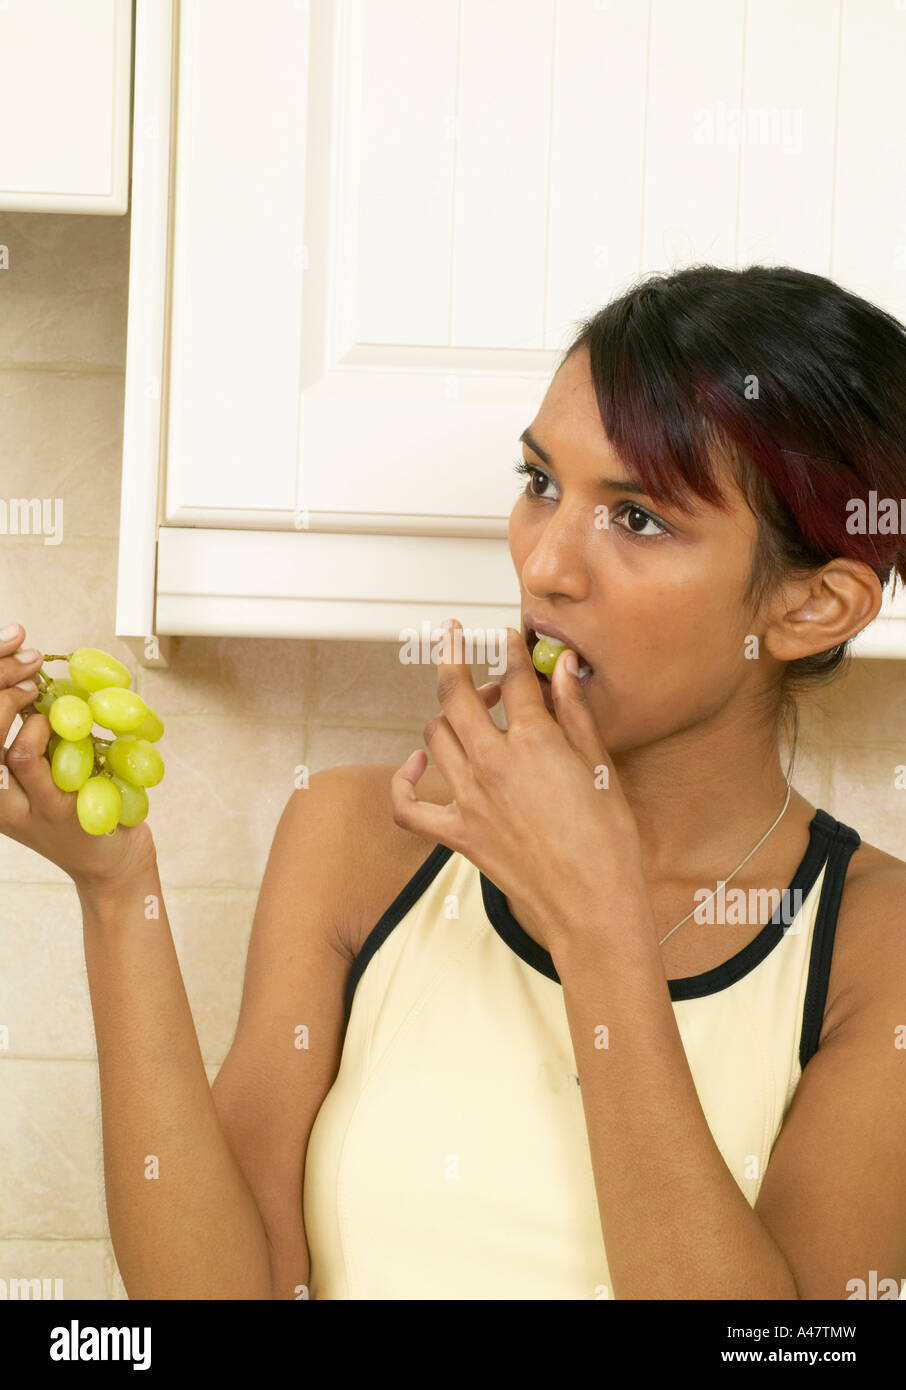 Belle jeune fille asiatique woman eating grapes Banque D'Images